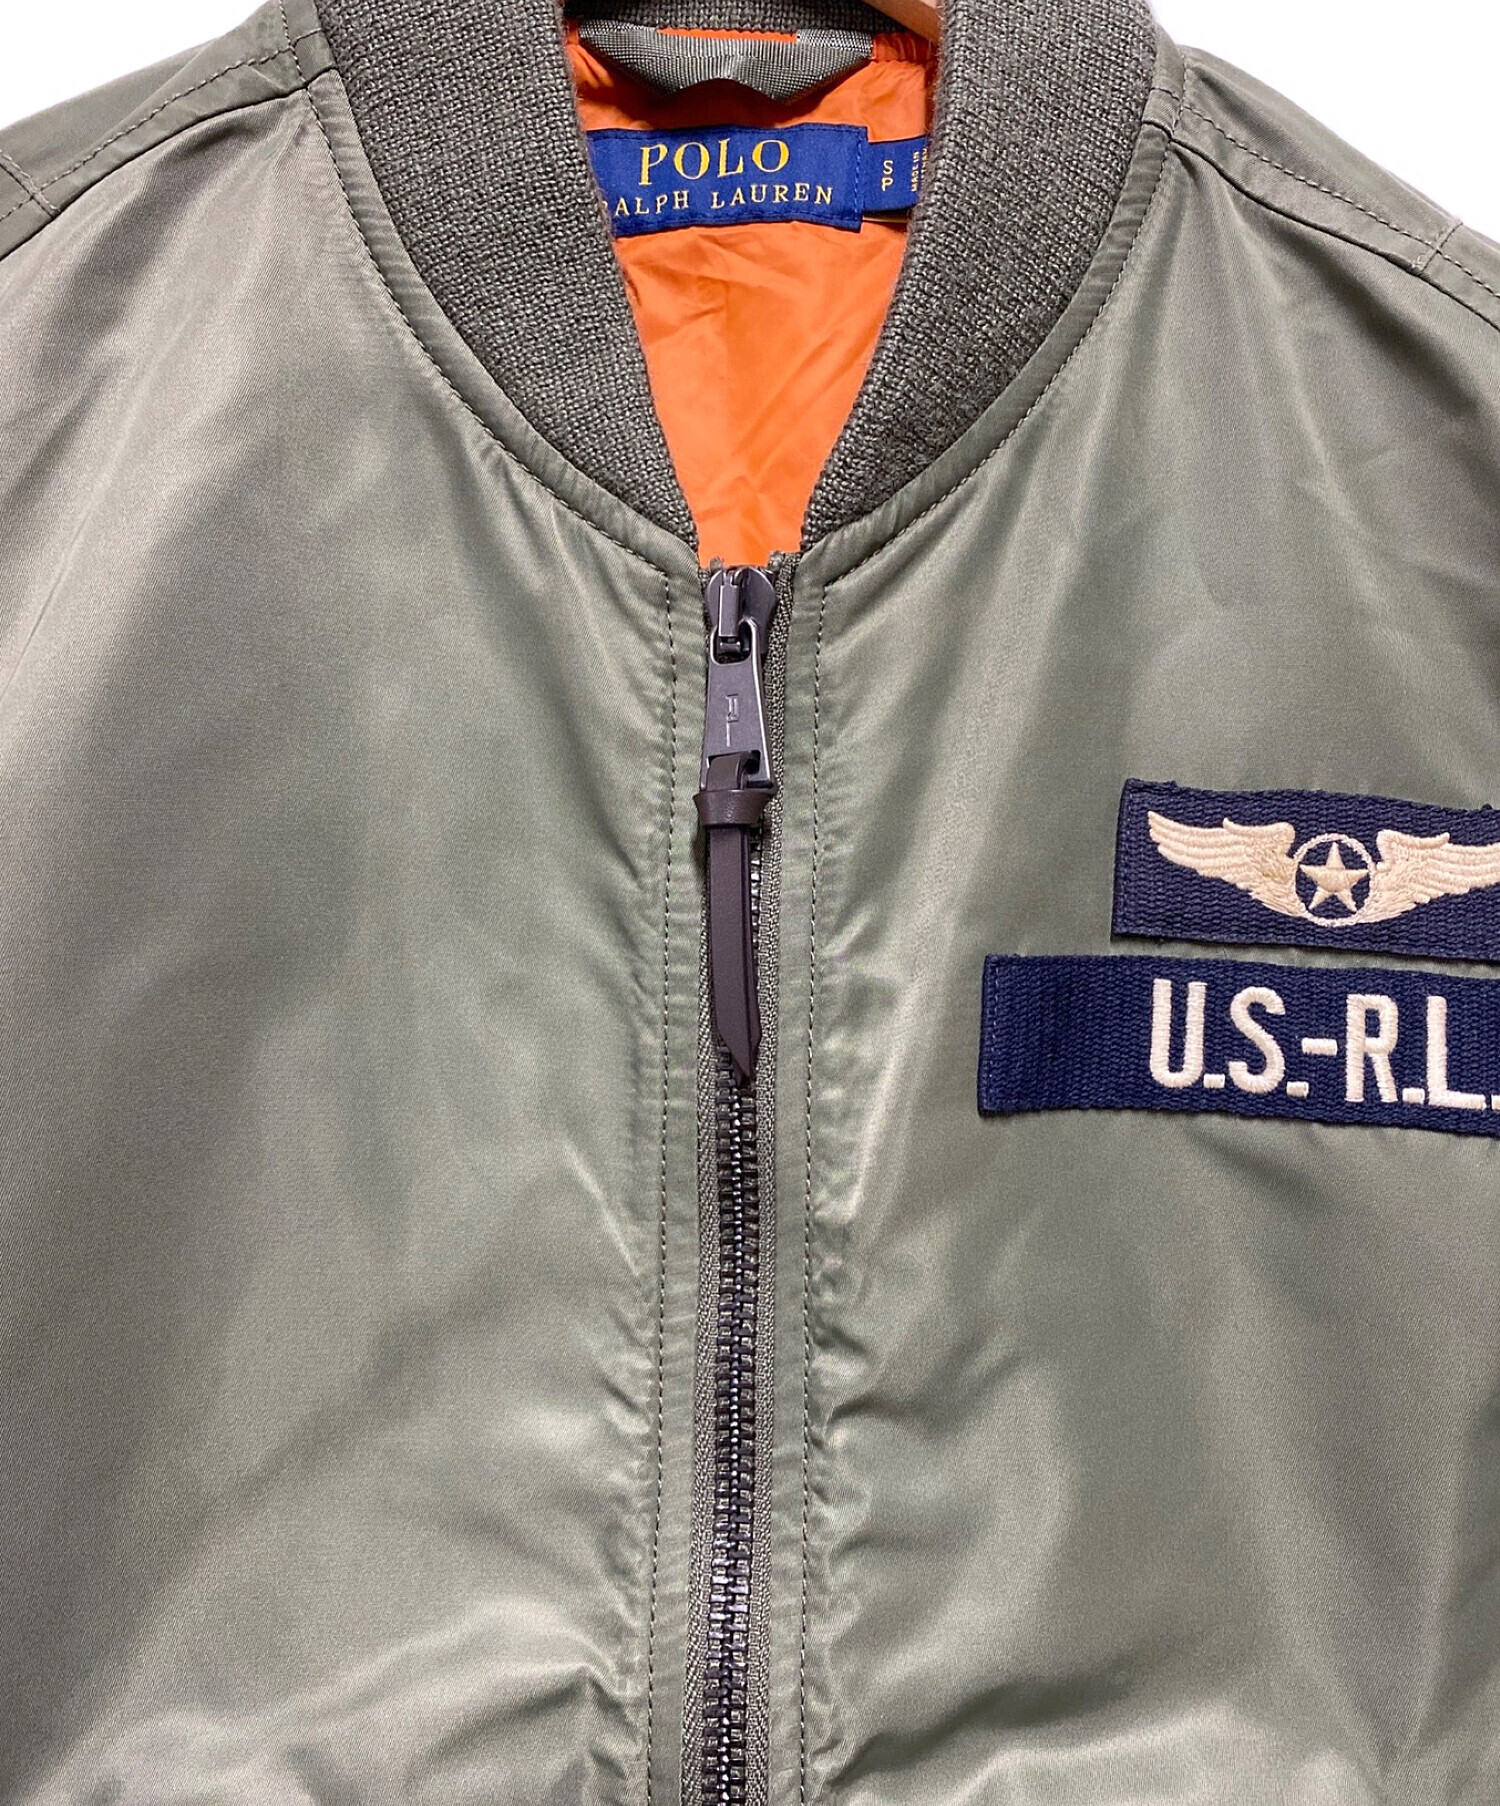 POLO RALPH LAUREN (ポロ・ラルフローレン) MA-1 Flight Jacket カーキ サイズ:S